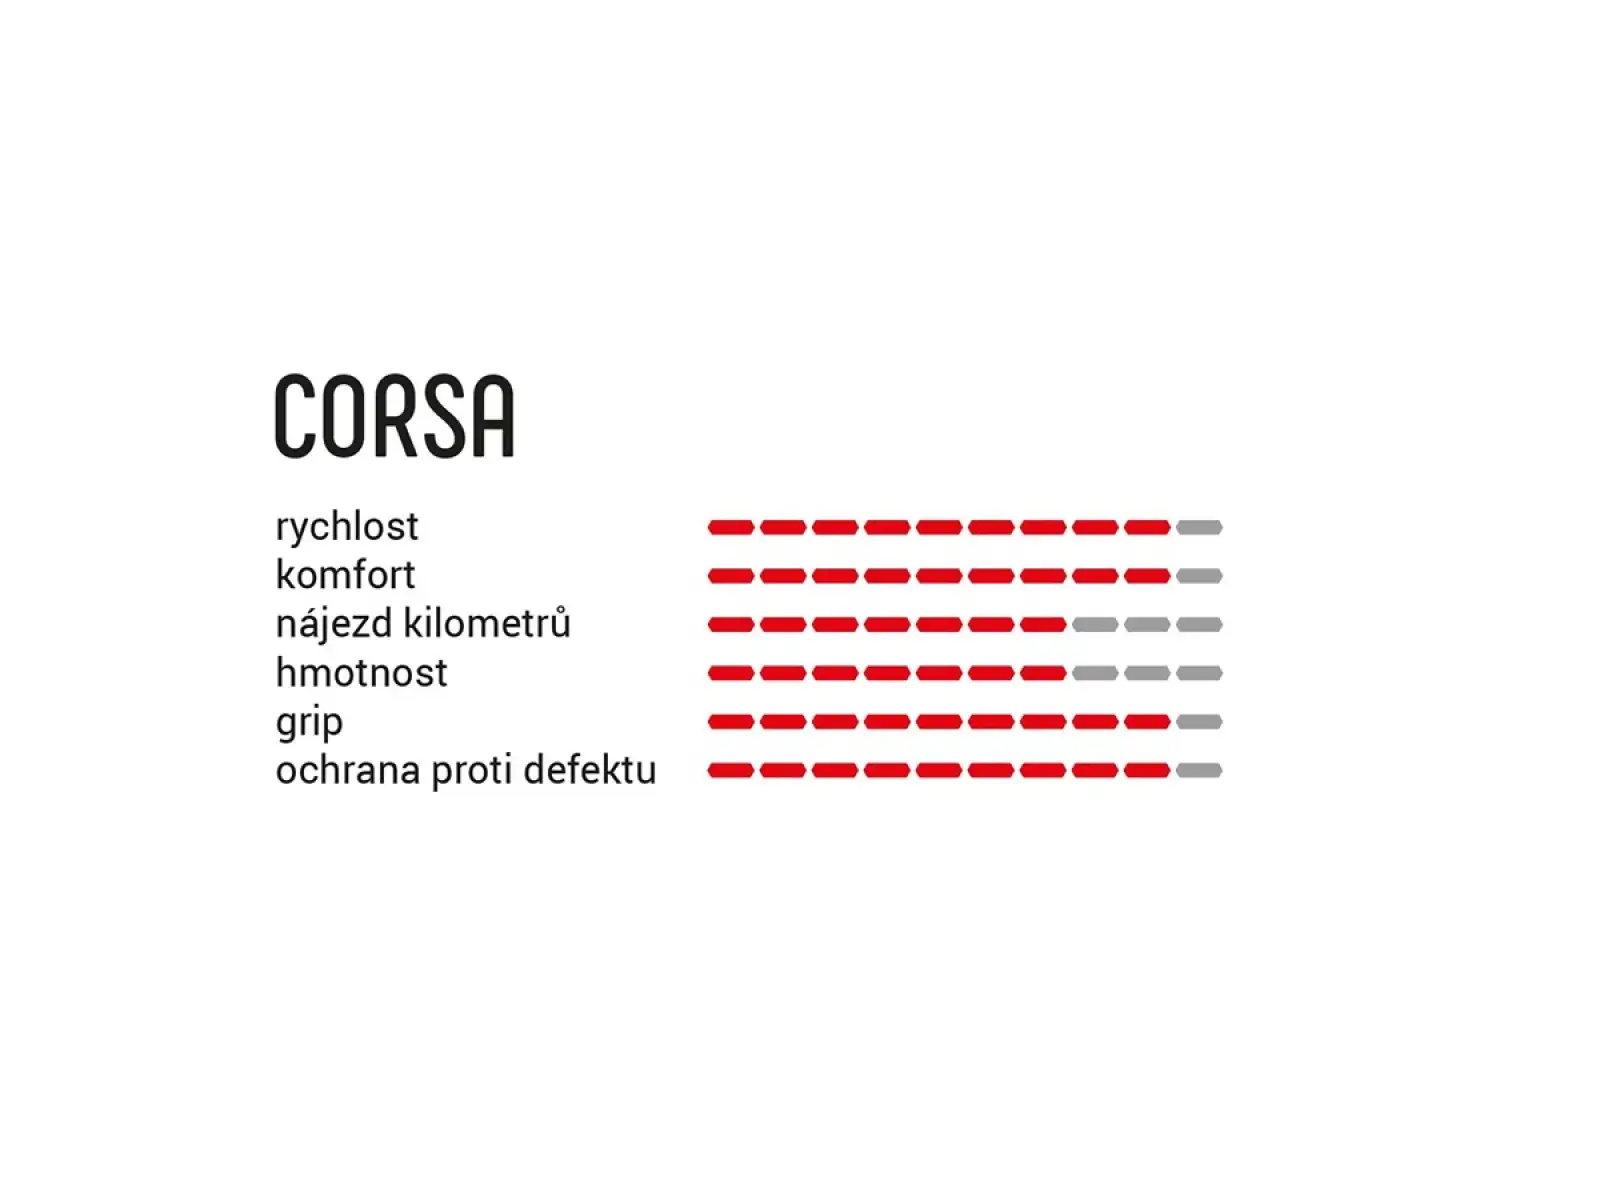 Vittoria Corsa G2.0 25-622 silniční plášť kevlar para/black